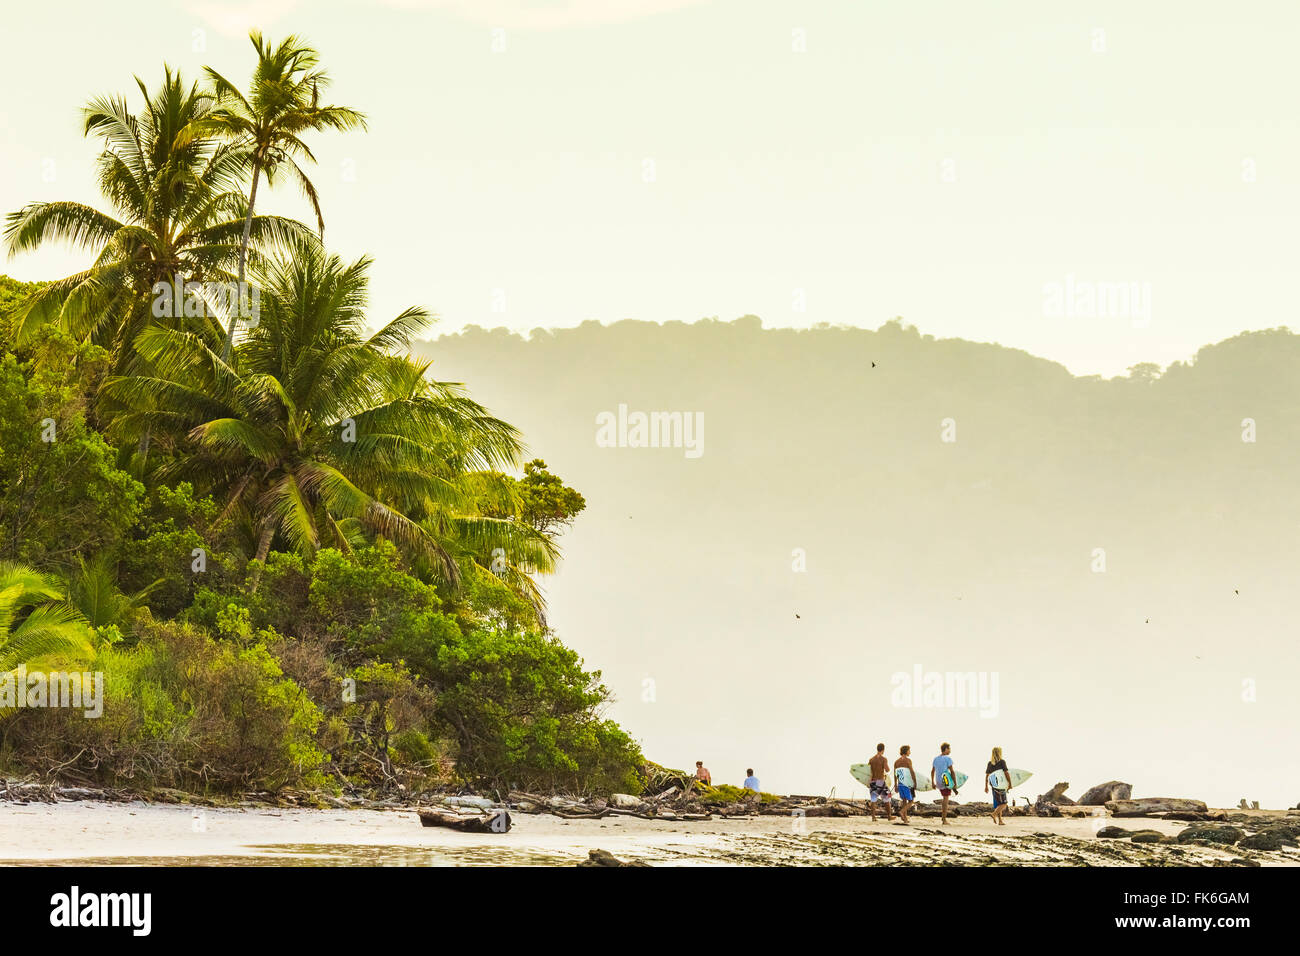 Les surfeurs sur la plage au sud de la hanche cette Péninsule de Nicoya Surf resort, Santa Teresa, Puntarenas, Costa Rica Banque D'Images